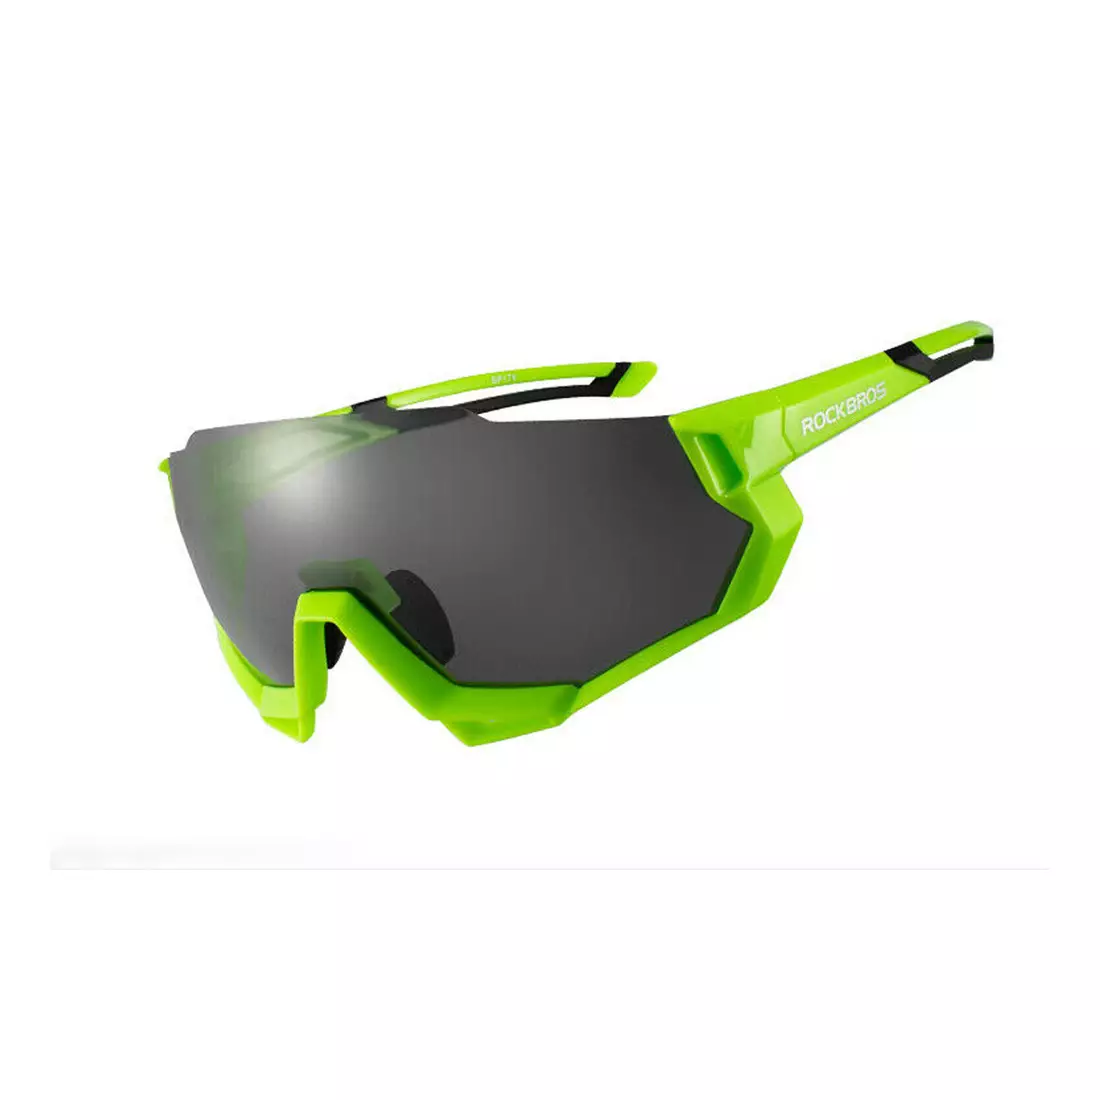 Rockbros 10133 Kerékpáros / sport szemüveg, polarizált 5 cserélhető lencse, zöld